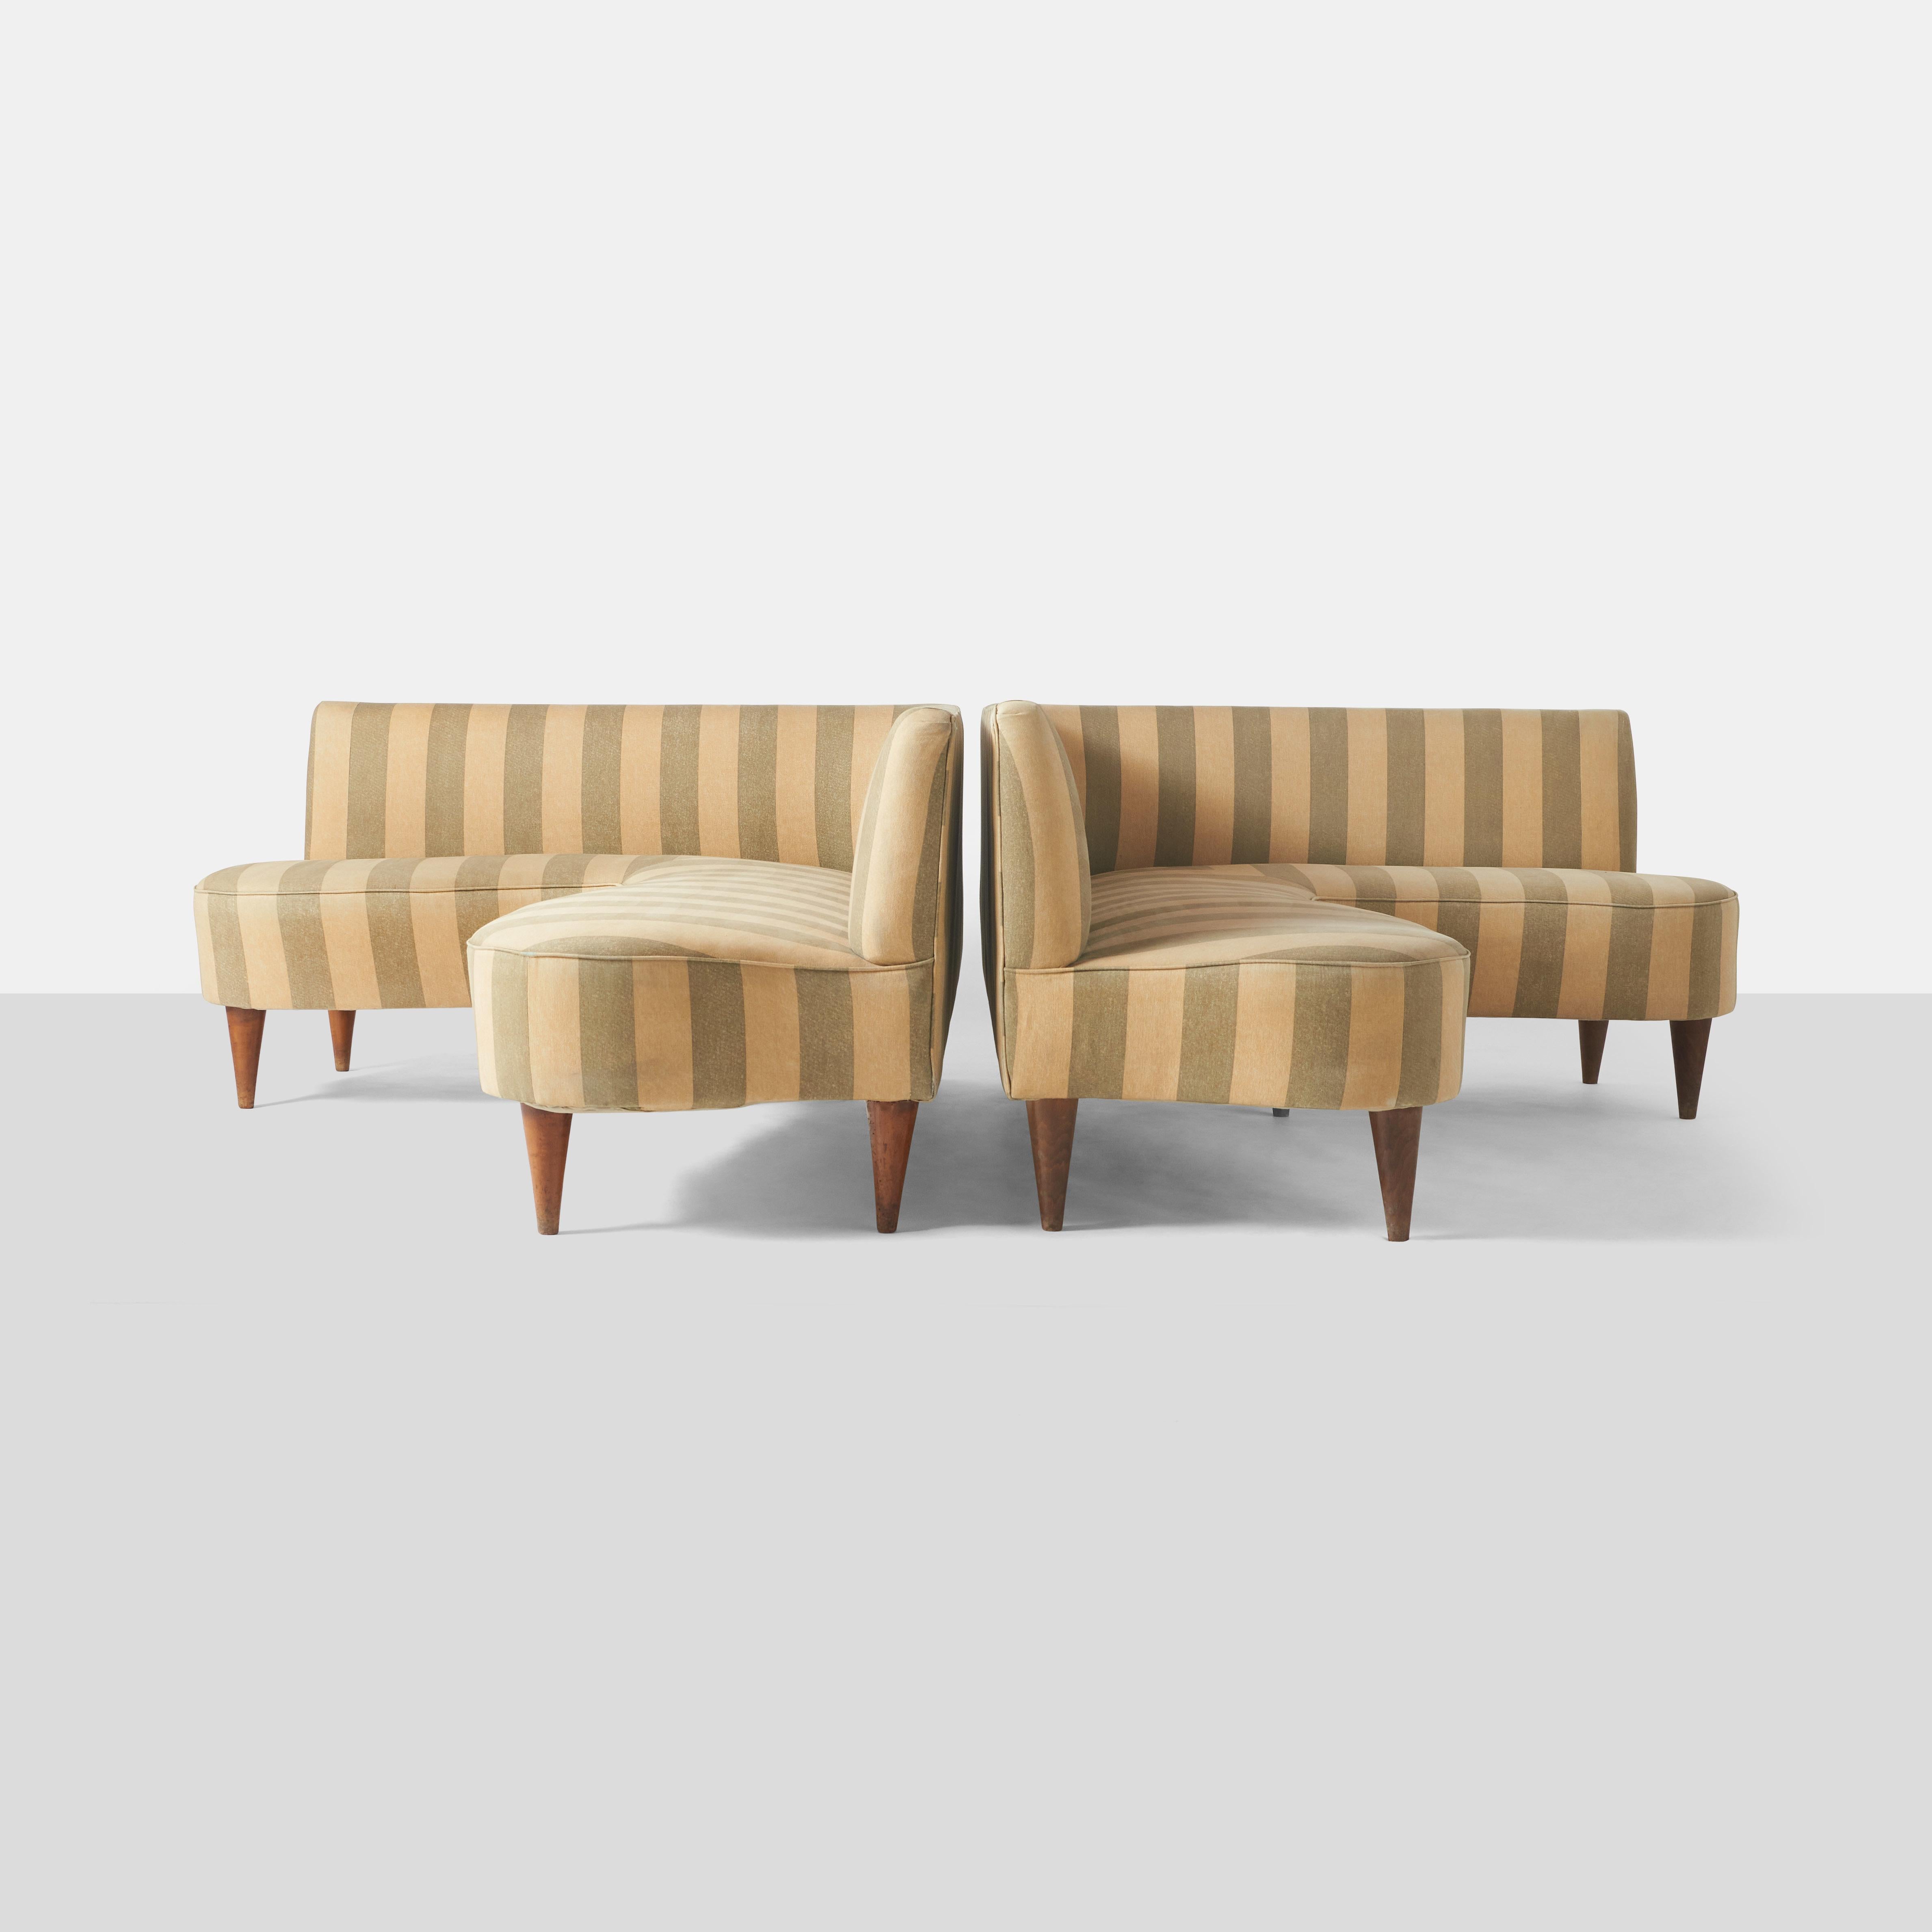 Ein Paar L-förmige Sofas aus den 50er Jahren, bezogen mit ihrem Originalstoff.